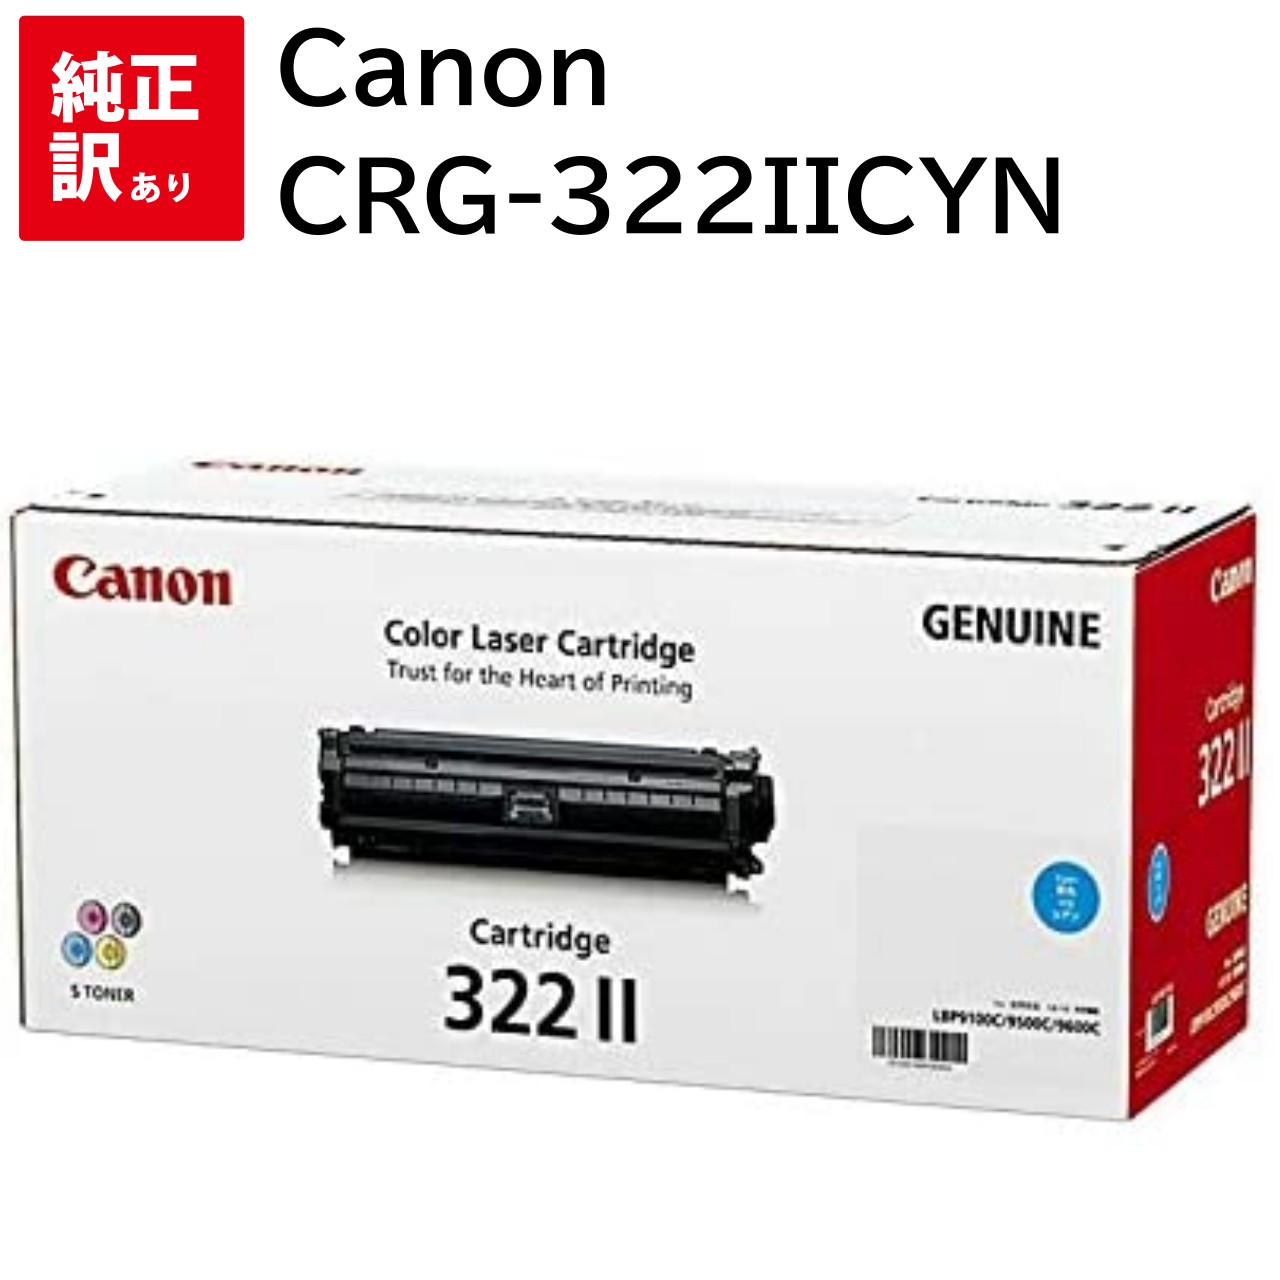 訳あり 新品 Canon CRG-322IICYN シアン 2651B001 キャノン トナー カートリッジ パソコン 周辺機器 PCサプライ 消耗品 プリンター メーカー 純正 送料無料 4960999572130 LBP9600C LBP9500C LBP9200C LBP9100C